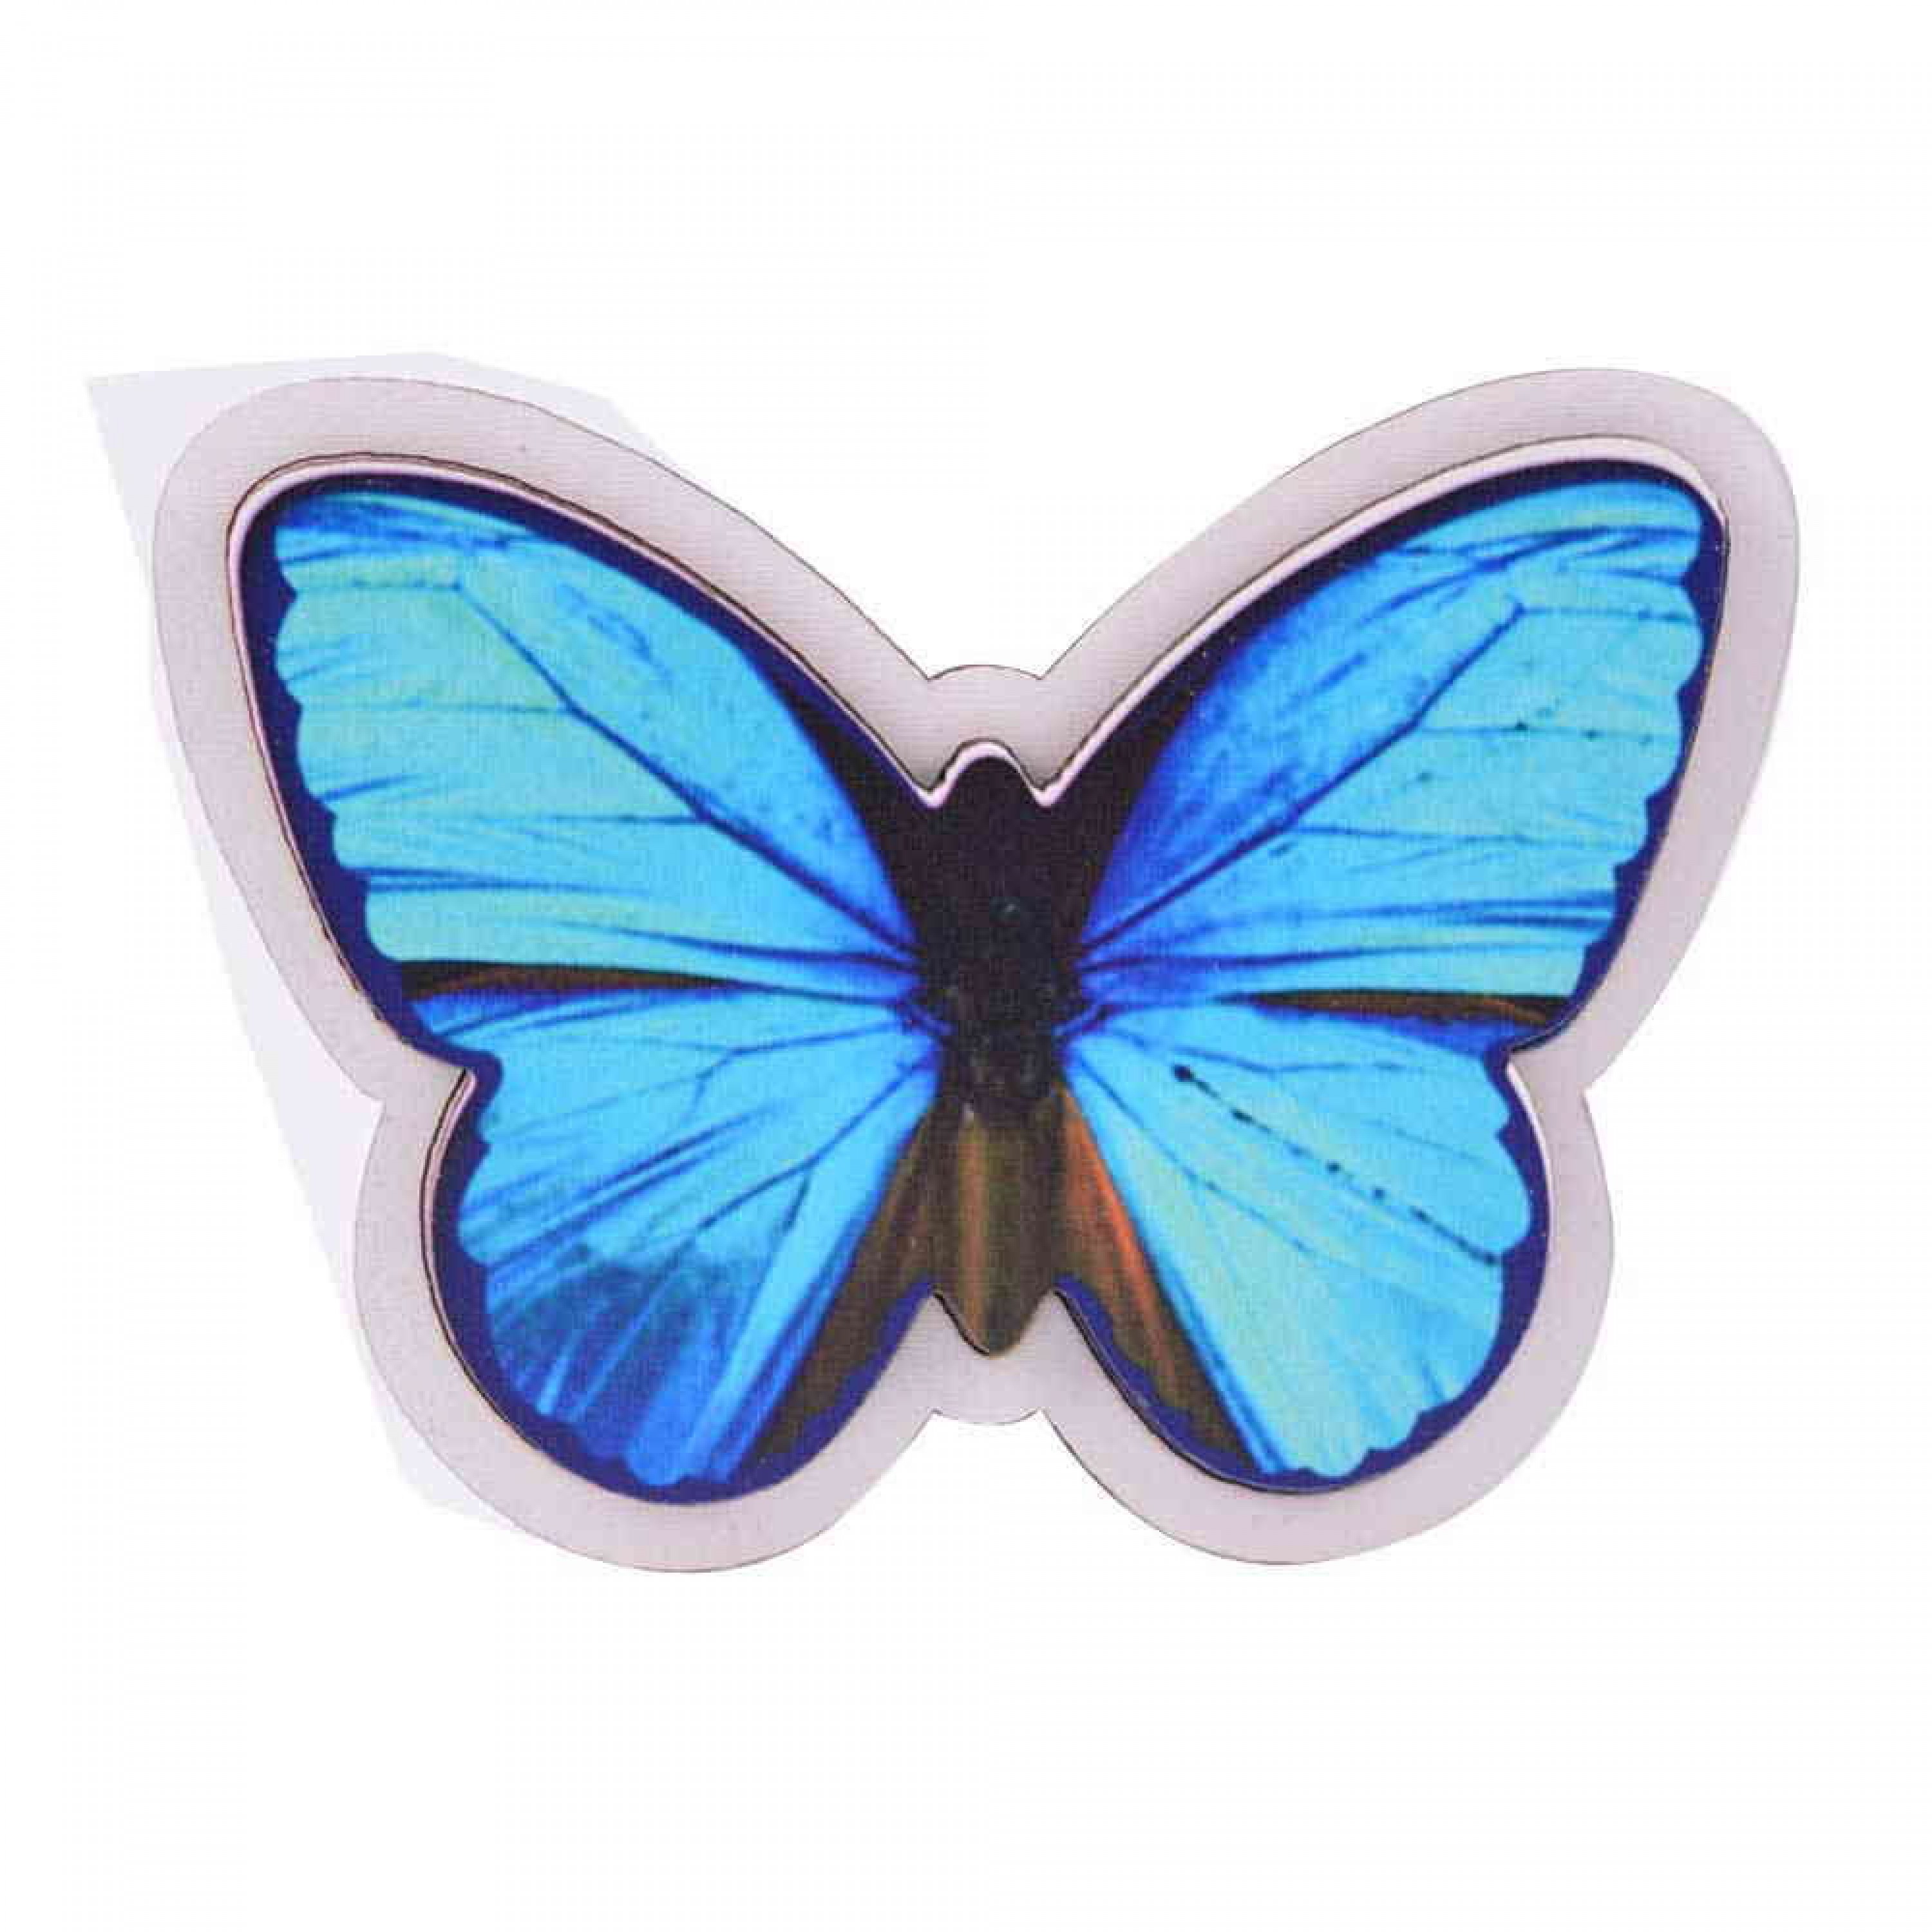 Kelebek Temalı 3D Resimli Ahşap Magnet